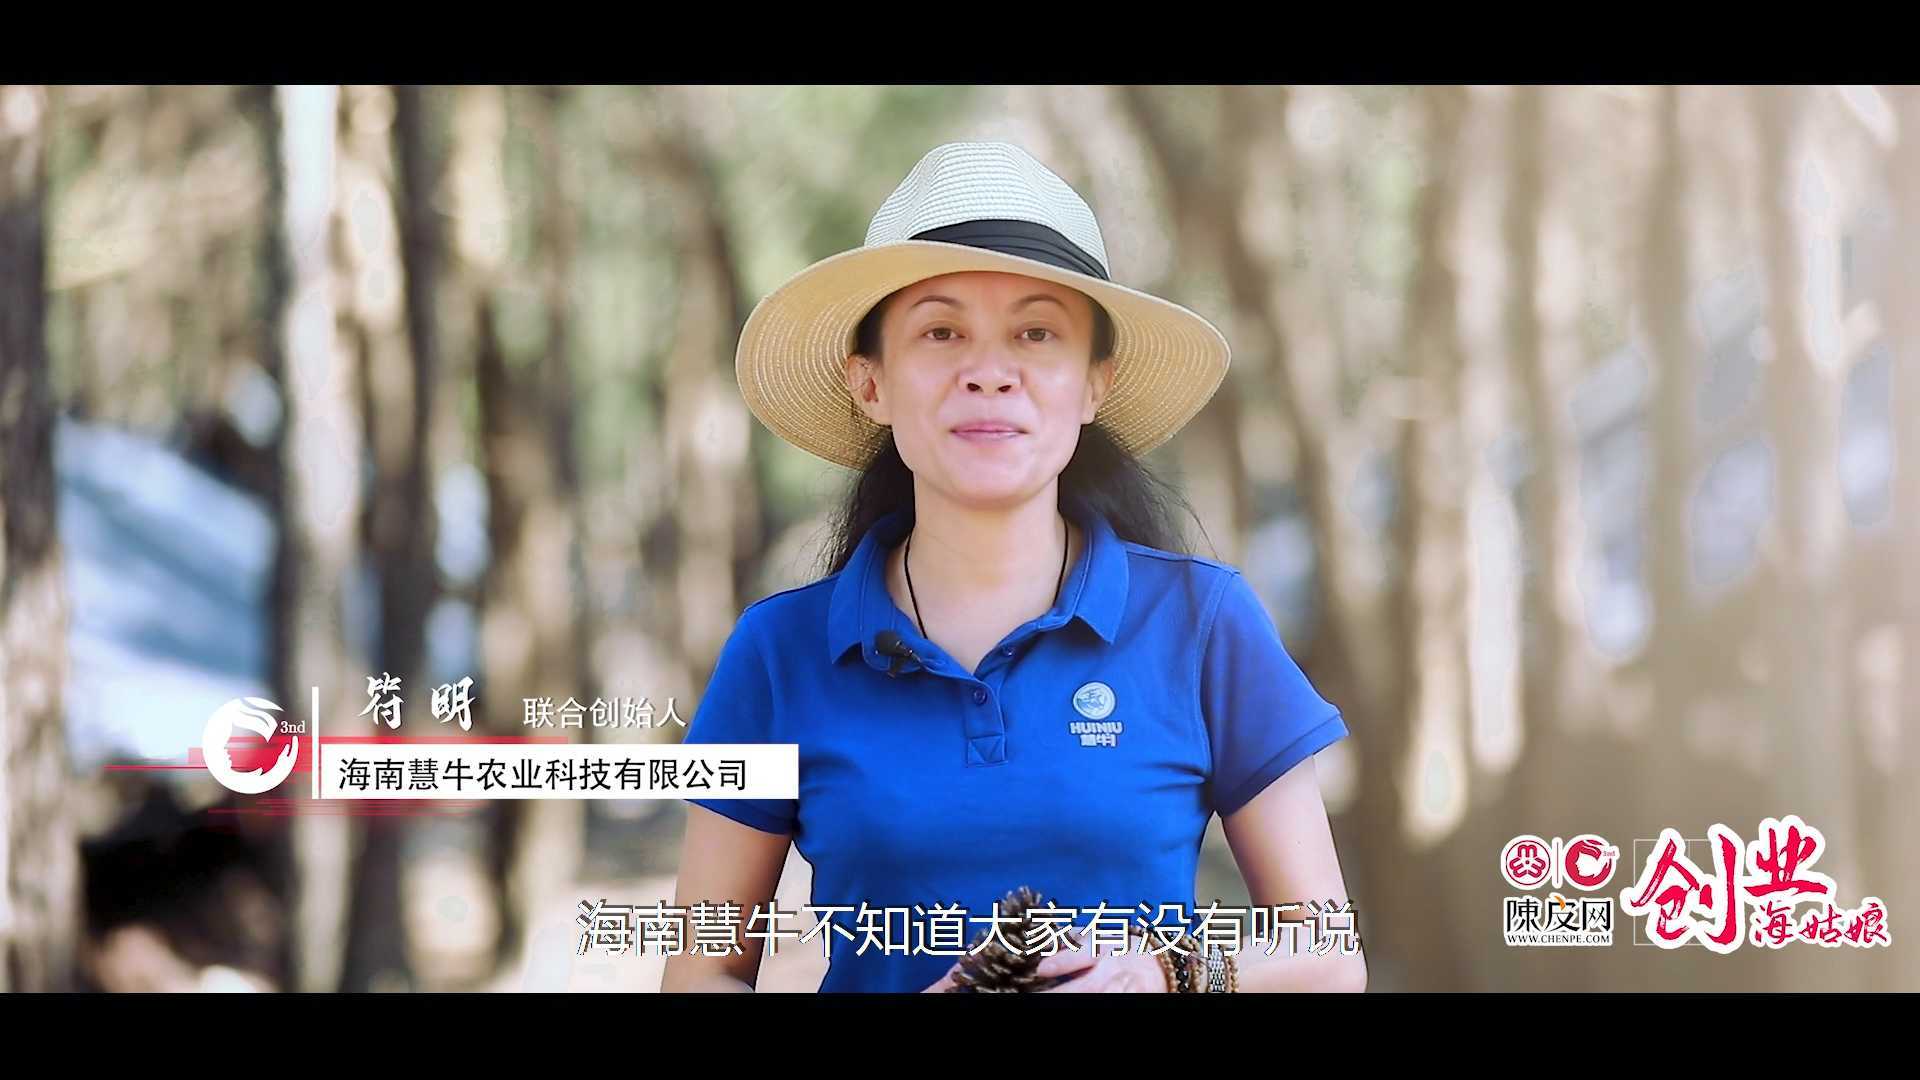 创业海姑娘|符明——人大法学生的乡村振兴“牛”路